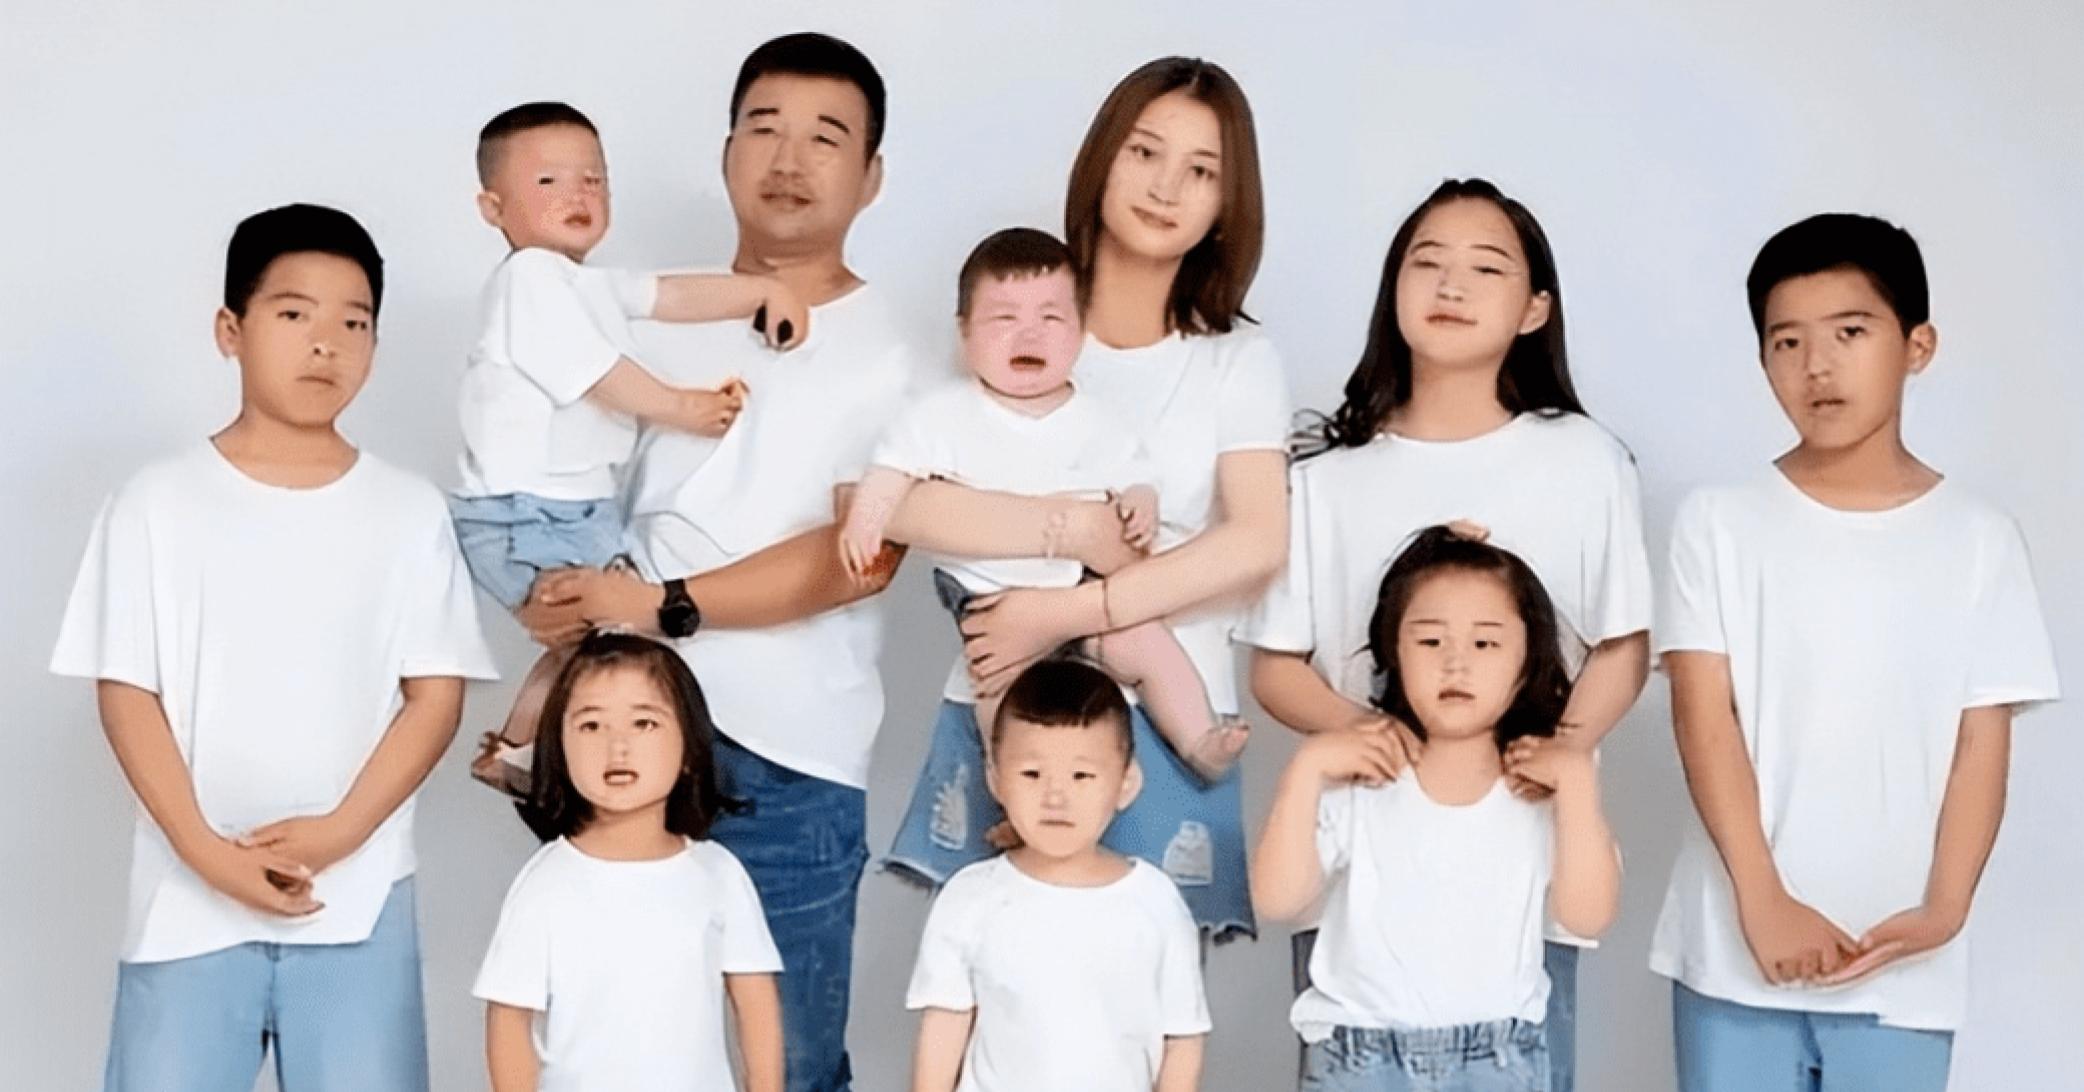 คู่รักจีนวางแผนมีลูก 12 คน 12 ราศี